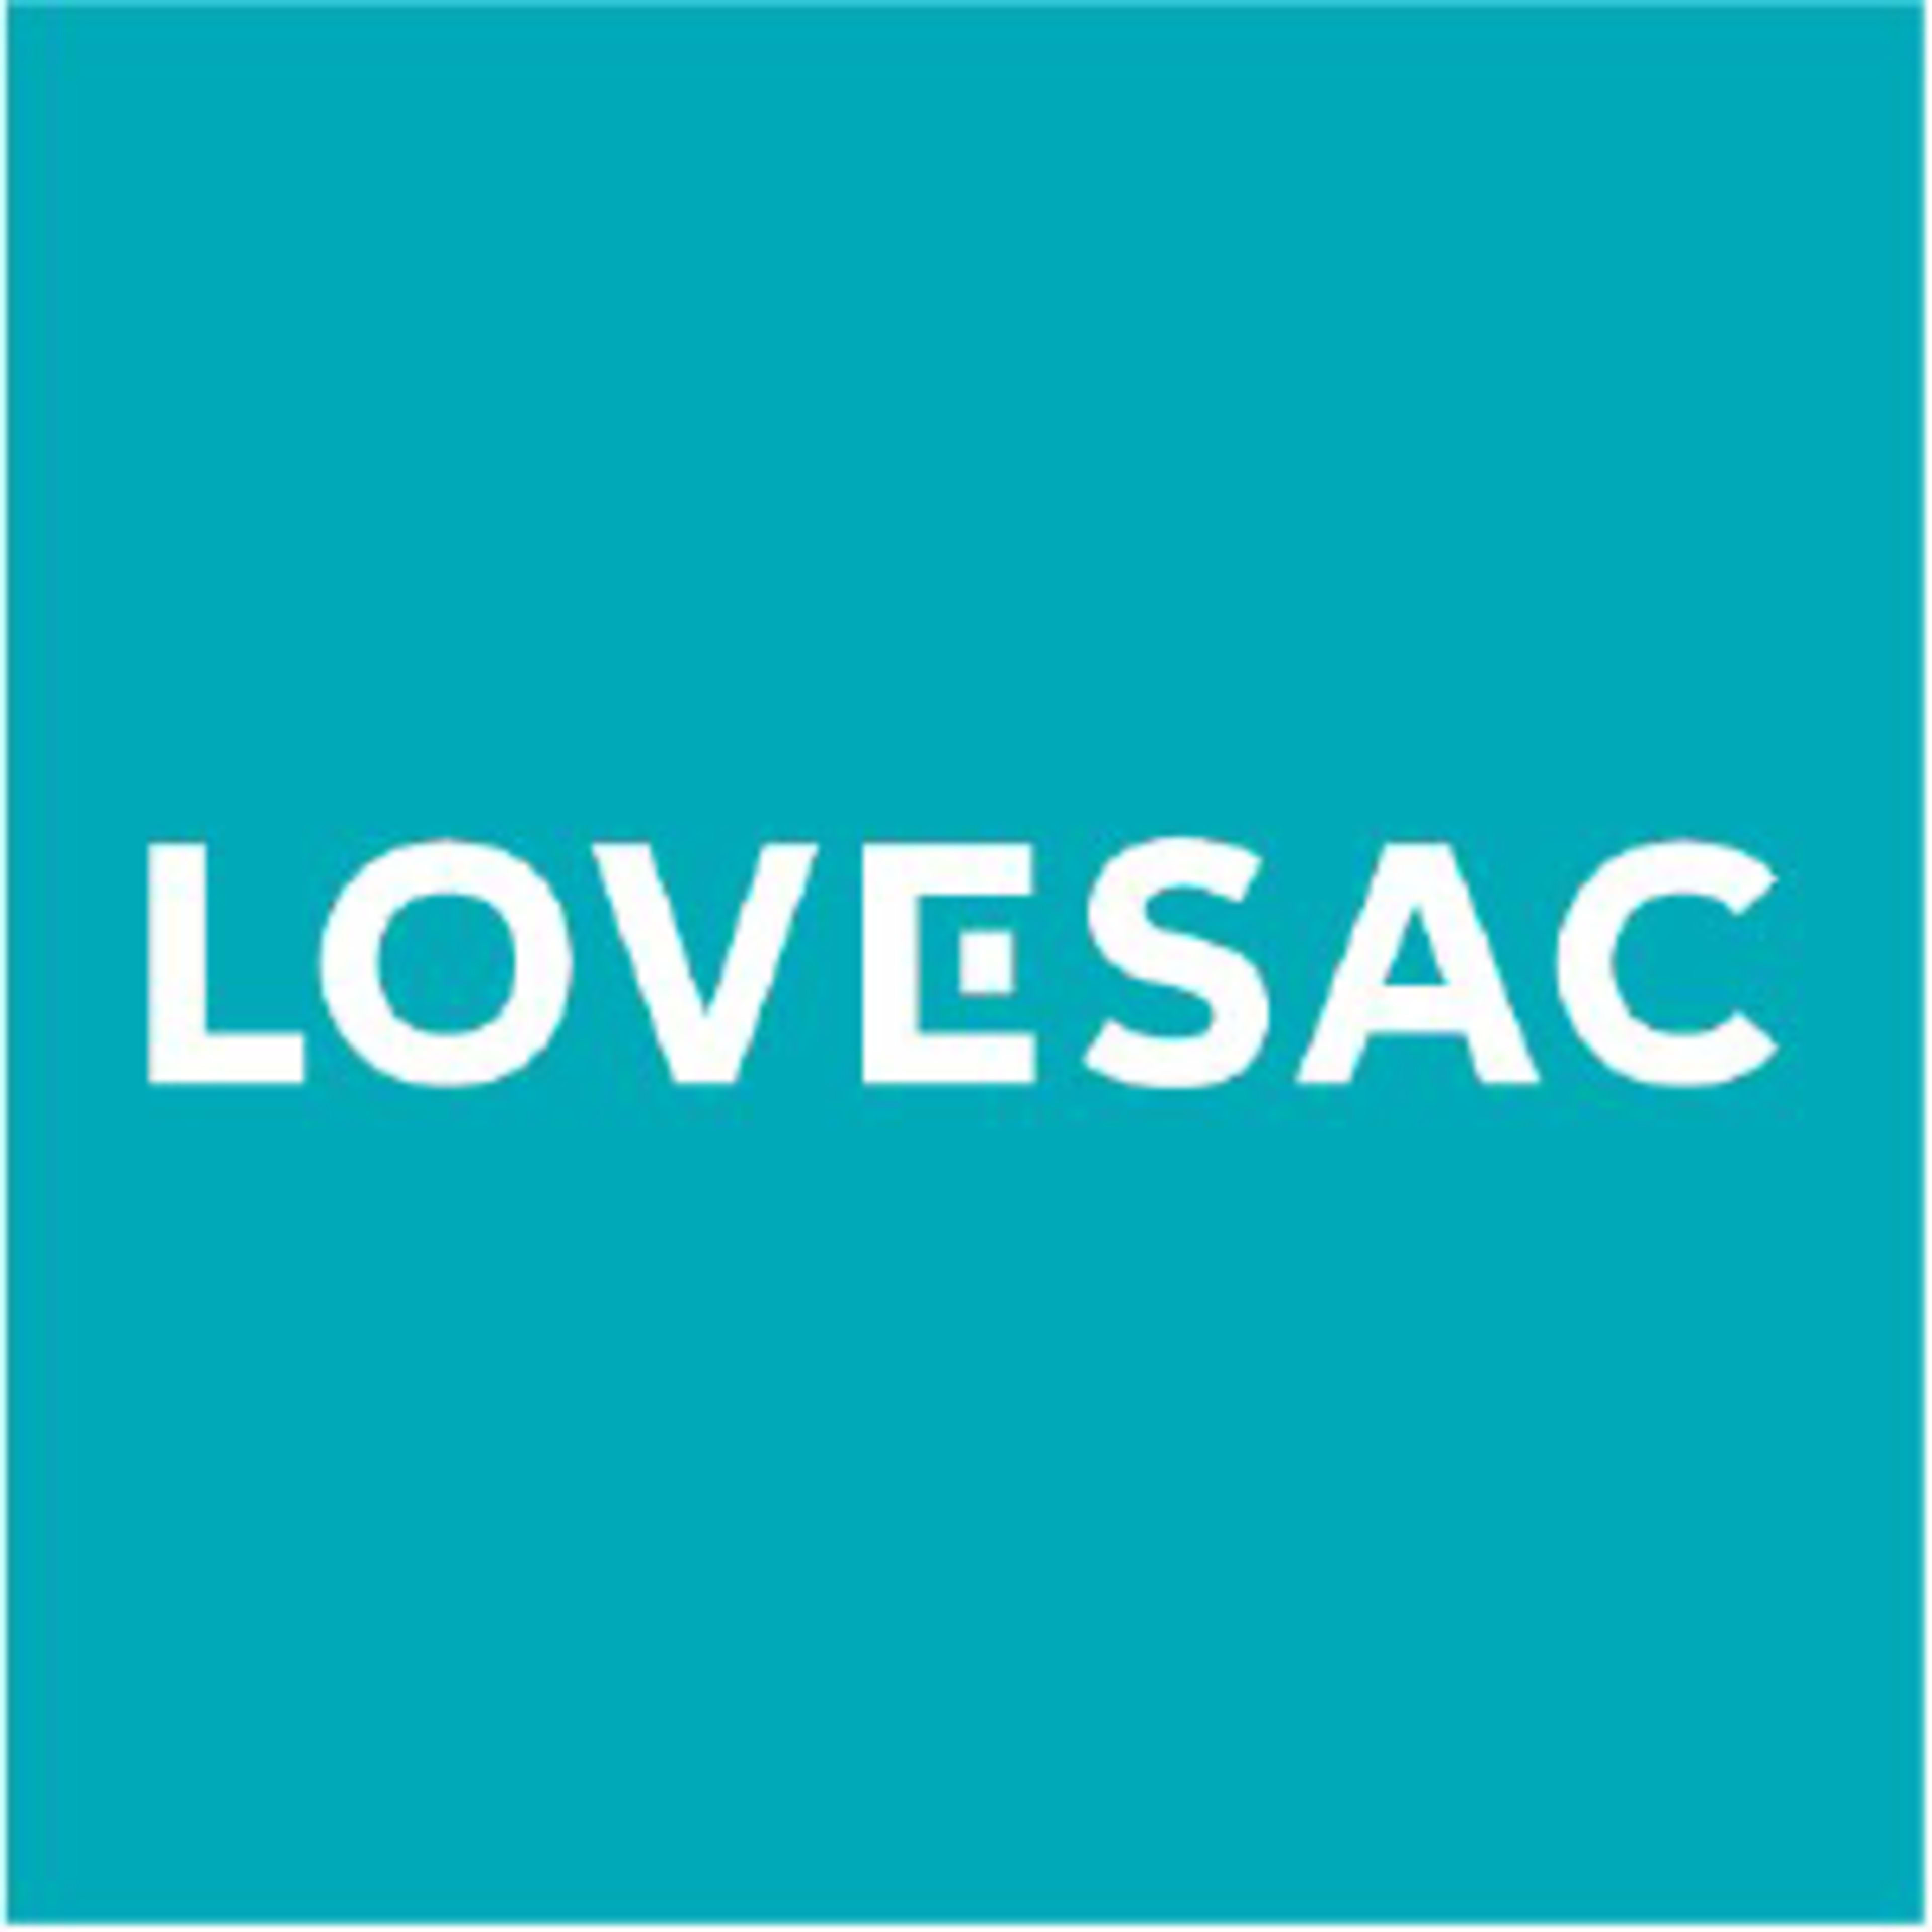 The Lovesac Company